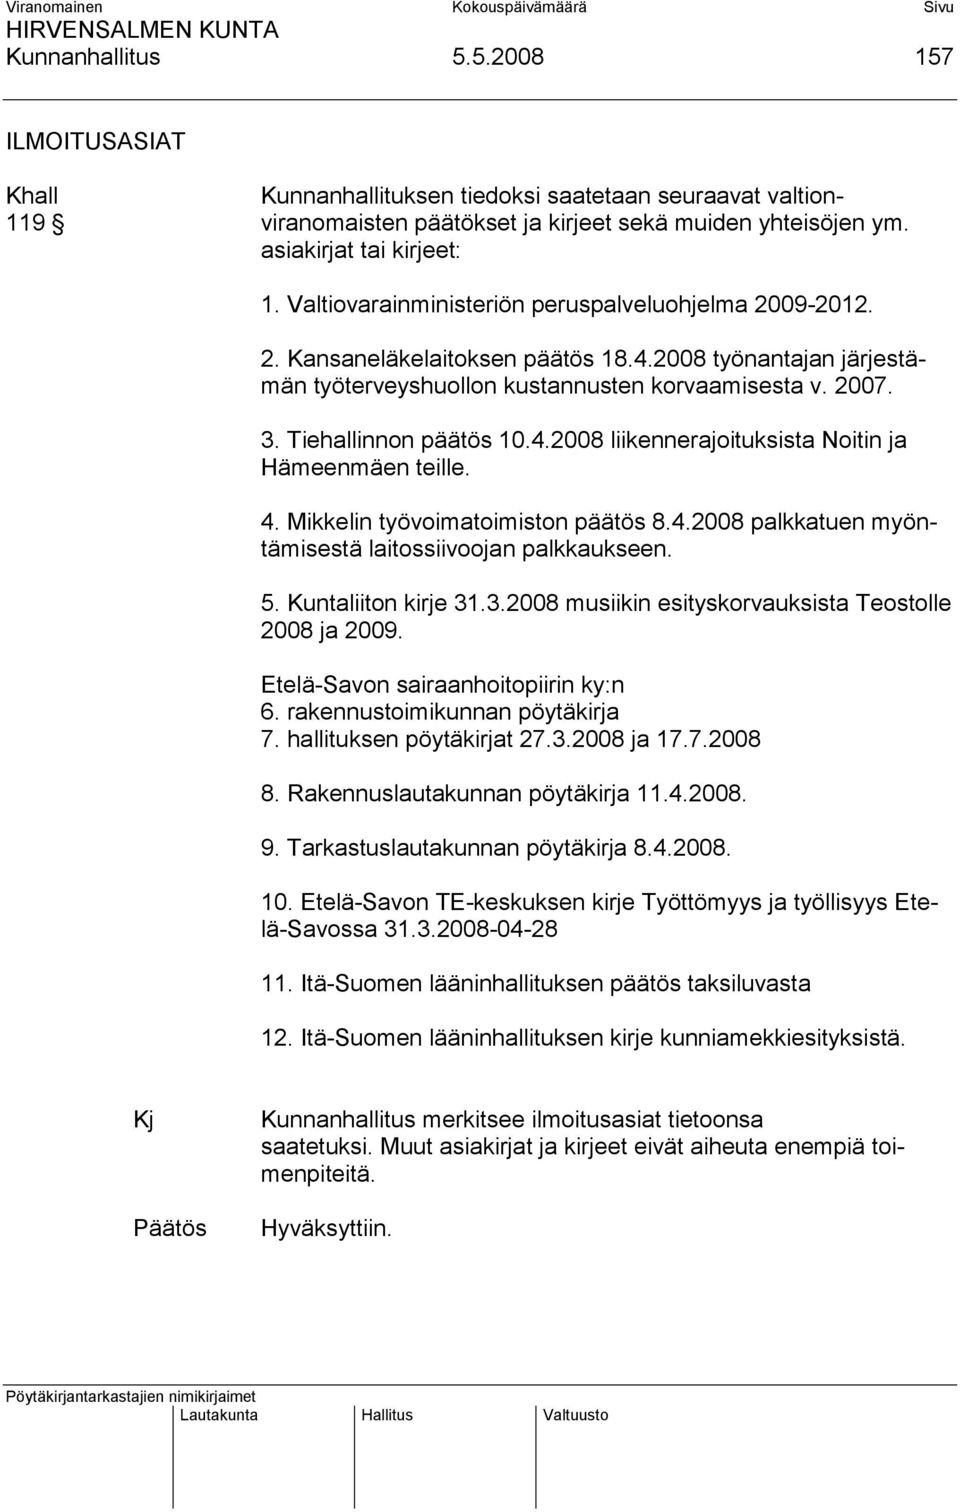 4.2008 liikennerajoituksista Noitin ja Hämeenmäen teille. 4. Mikkelin työvoimatoimiston päätös 8.4.2008 palkkatuen myöntämisestä laitossiivoojan palkkaukseen. 5. Kuntaliiton kirje 31